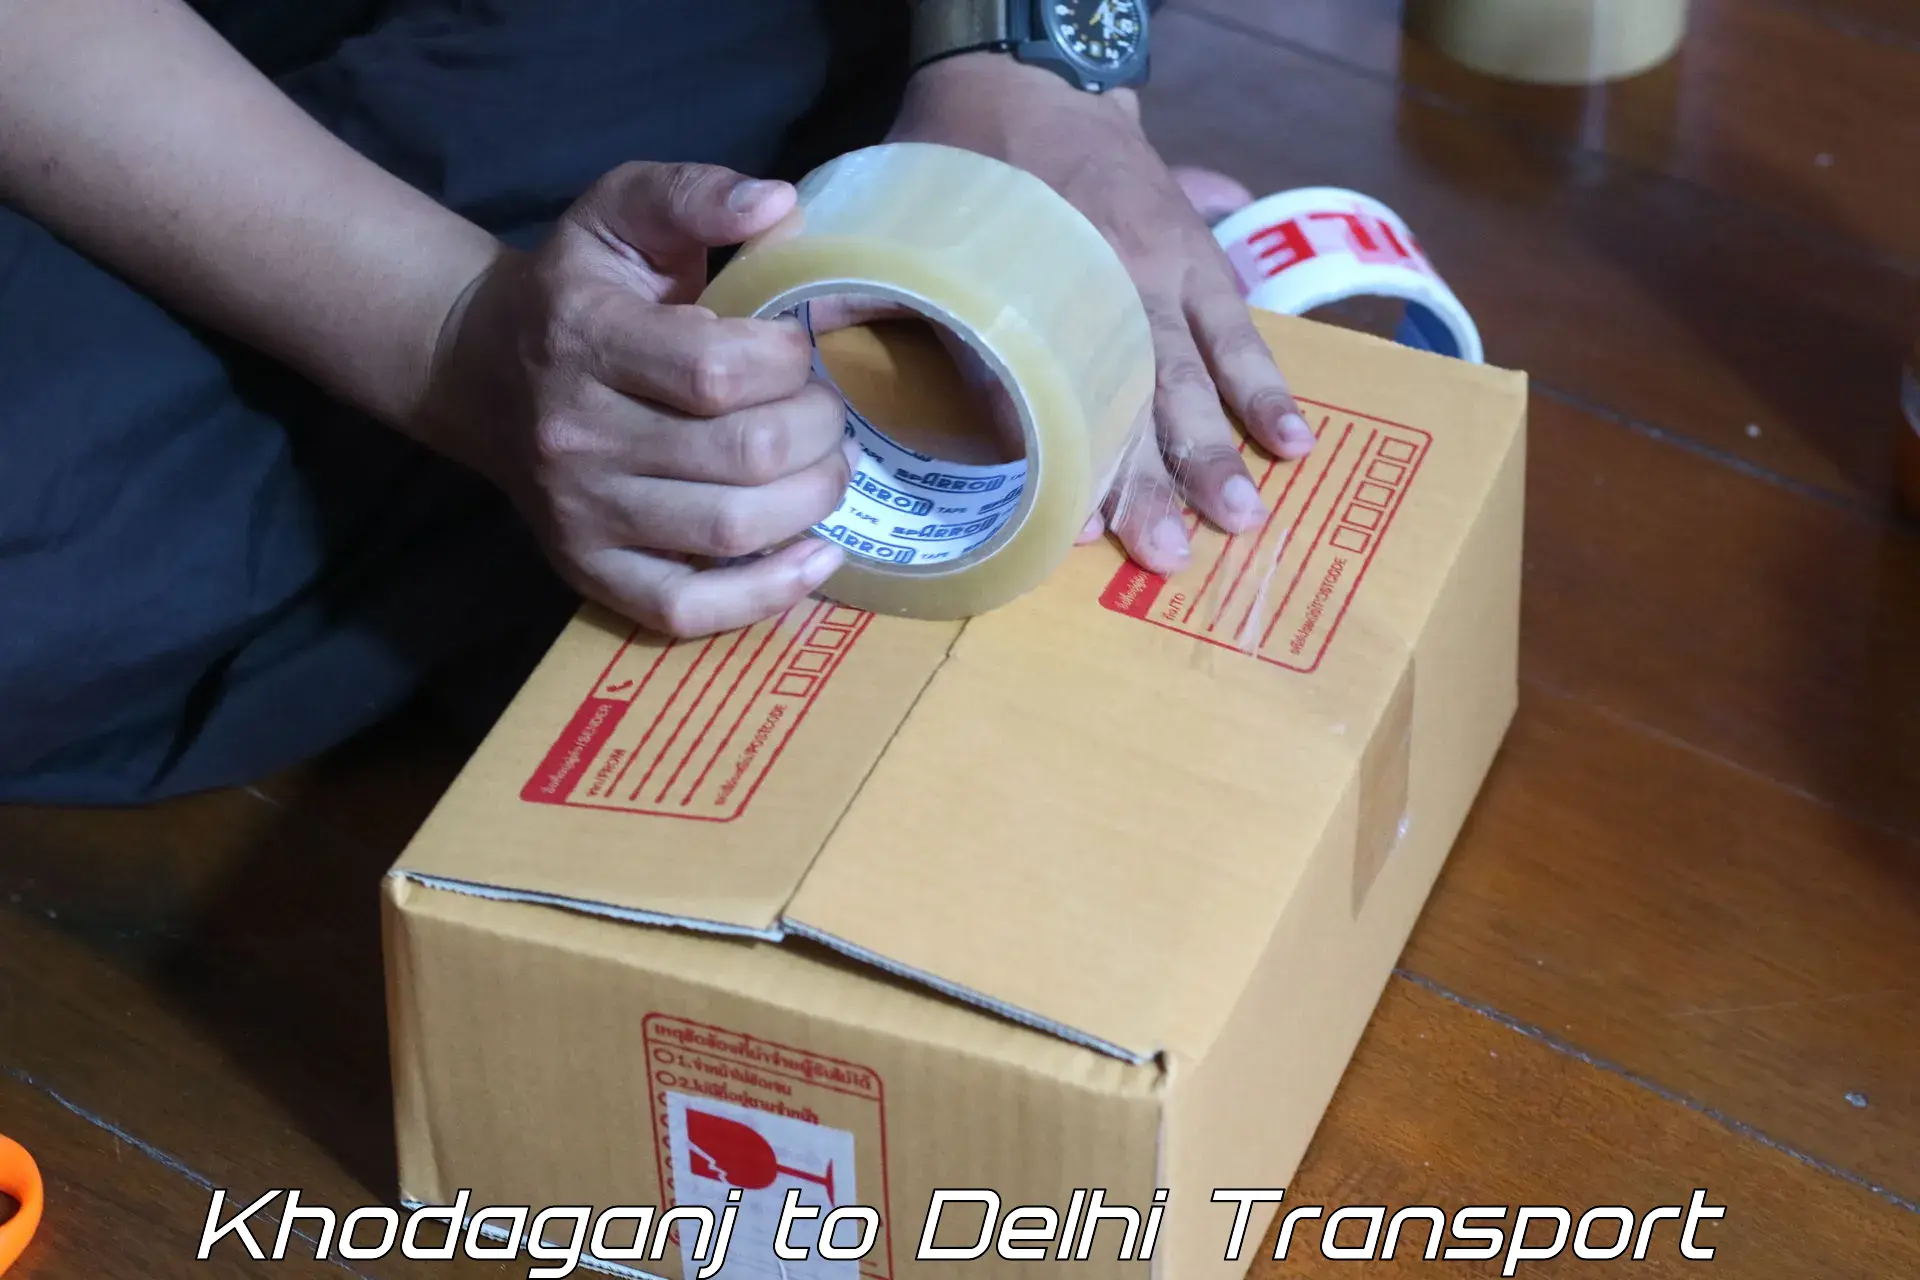 Online transport Khodaganj to NIT Delhi